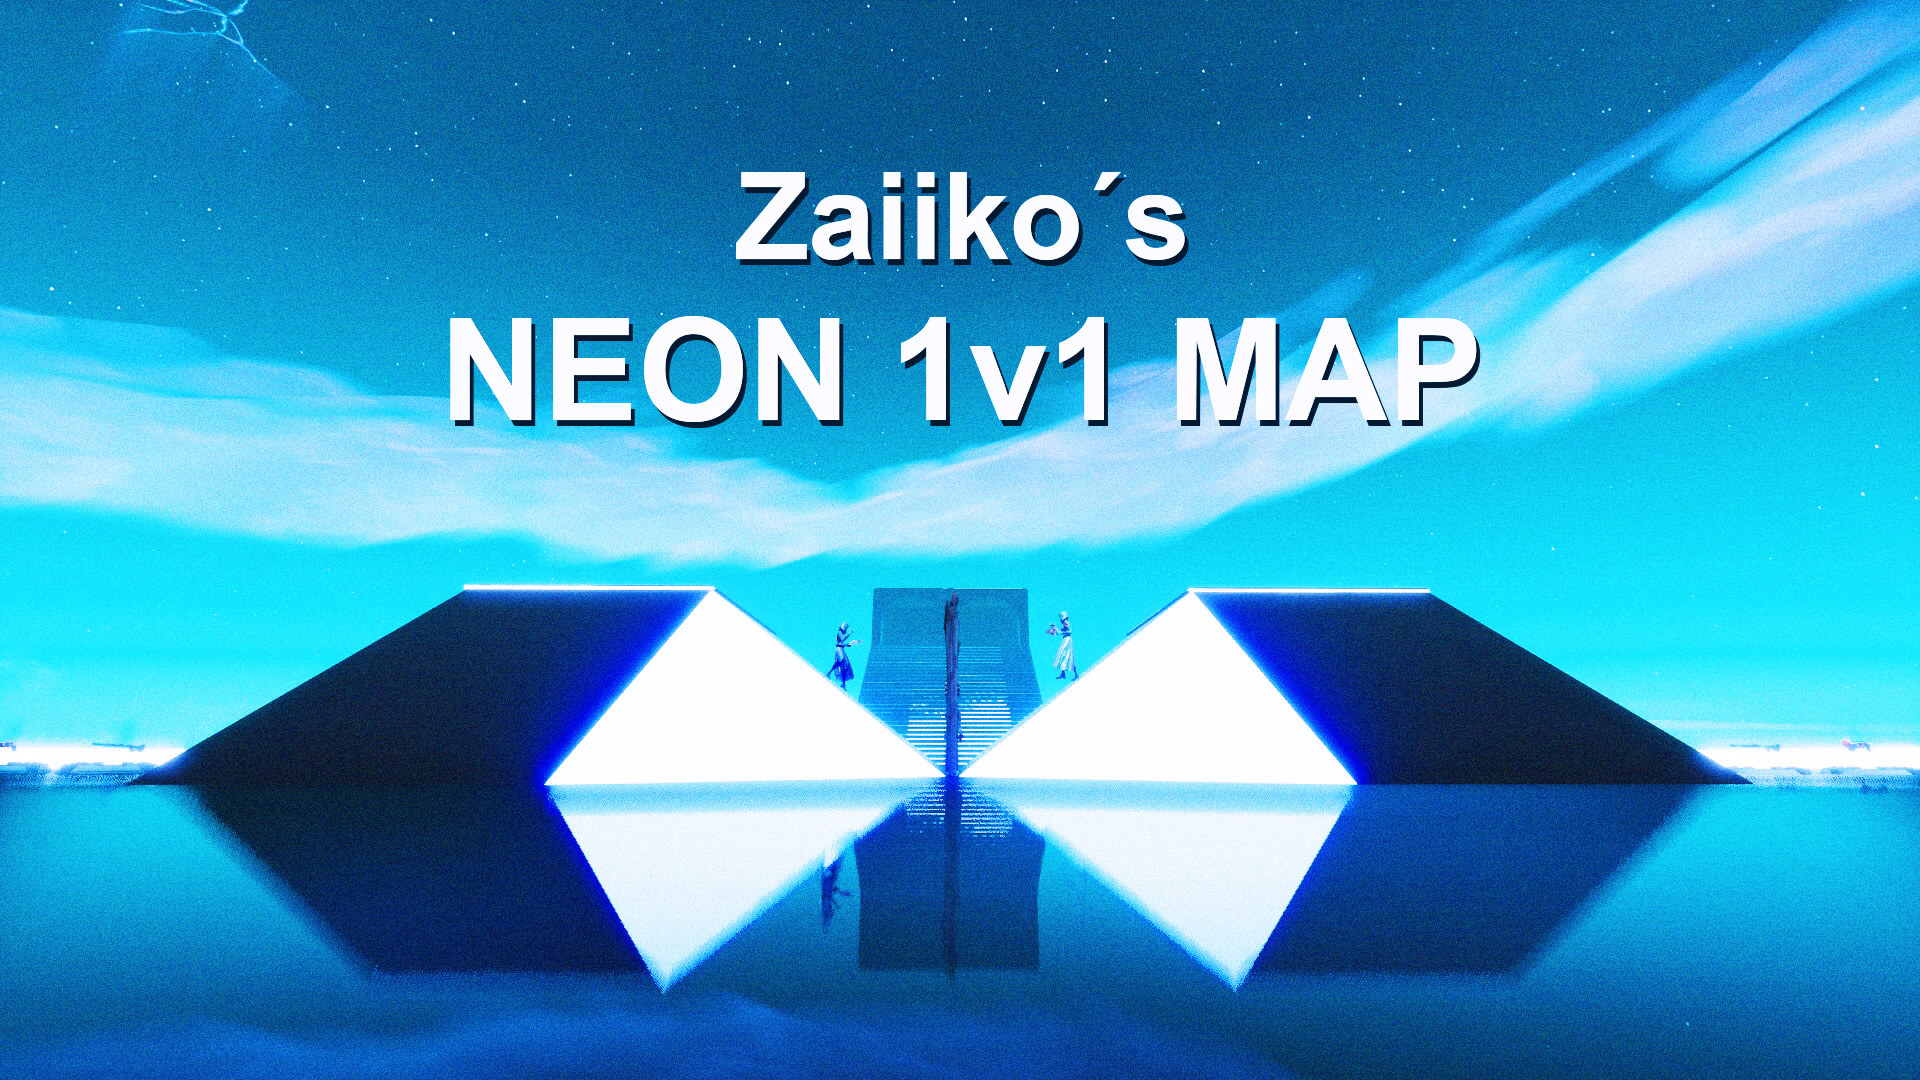 ZAIIKO’S NEON 1V1 MAP